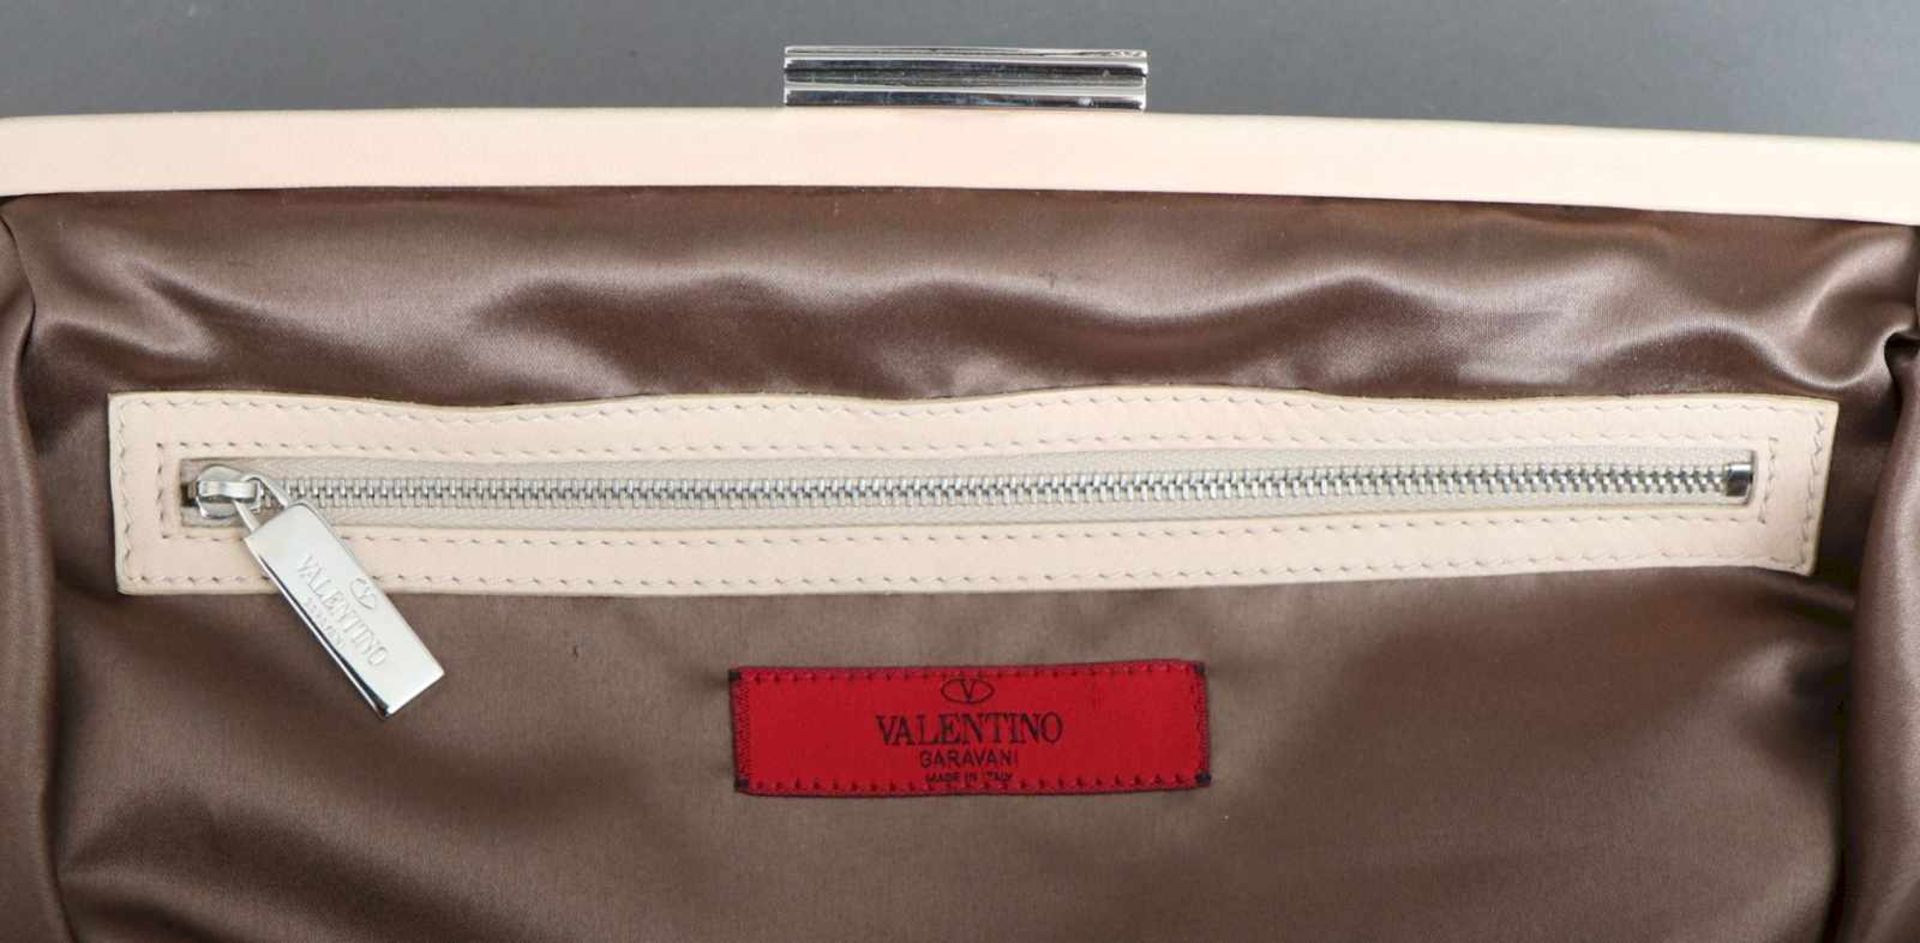 VALENTINO GARAVANI Handtaschecremefarbenes Leder mit üppigem Strass- und Paillettenbesatz, 2 kurze - Bild 3 aus 3